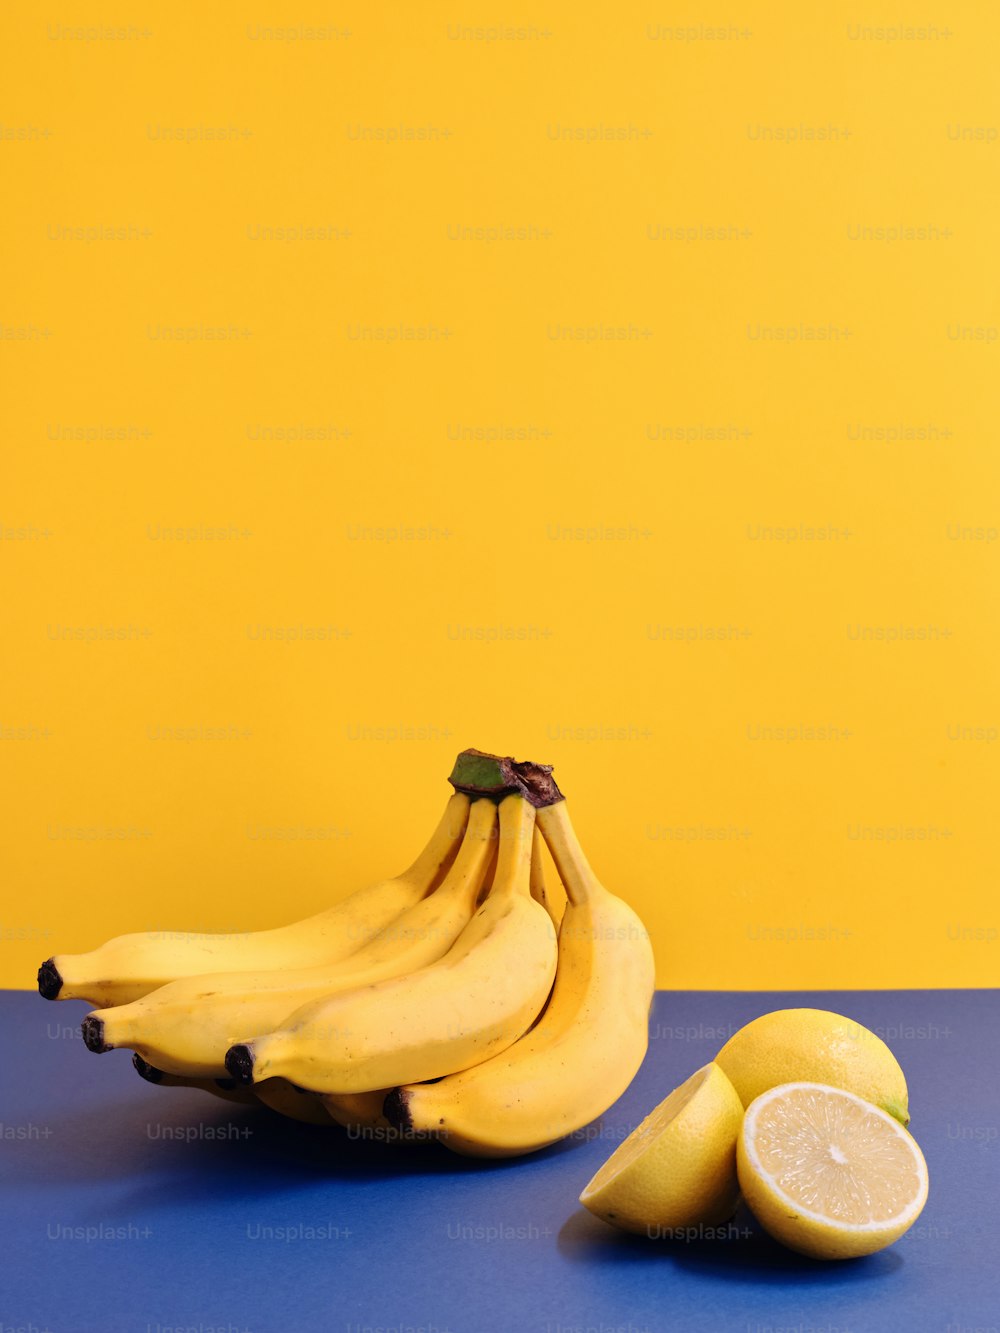 테이블 위에 바나나 한 다발과 레몬 두 개